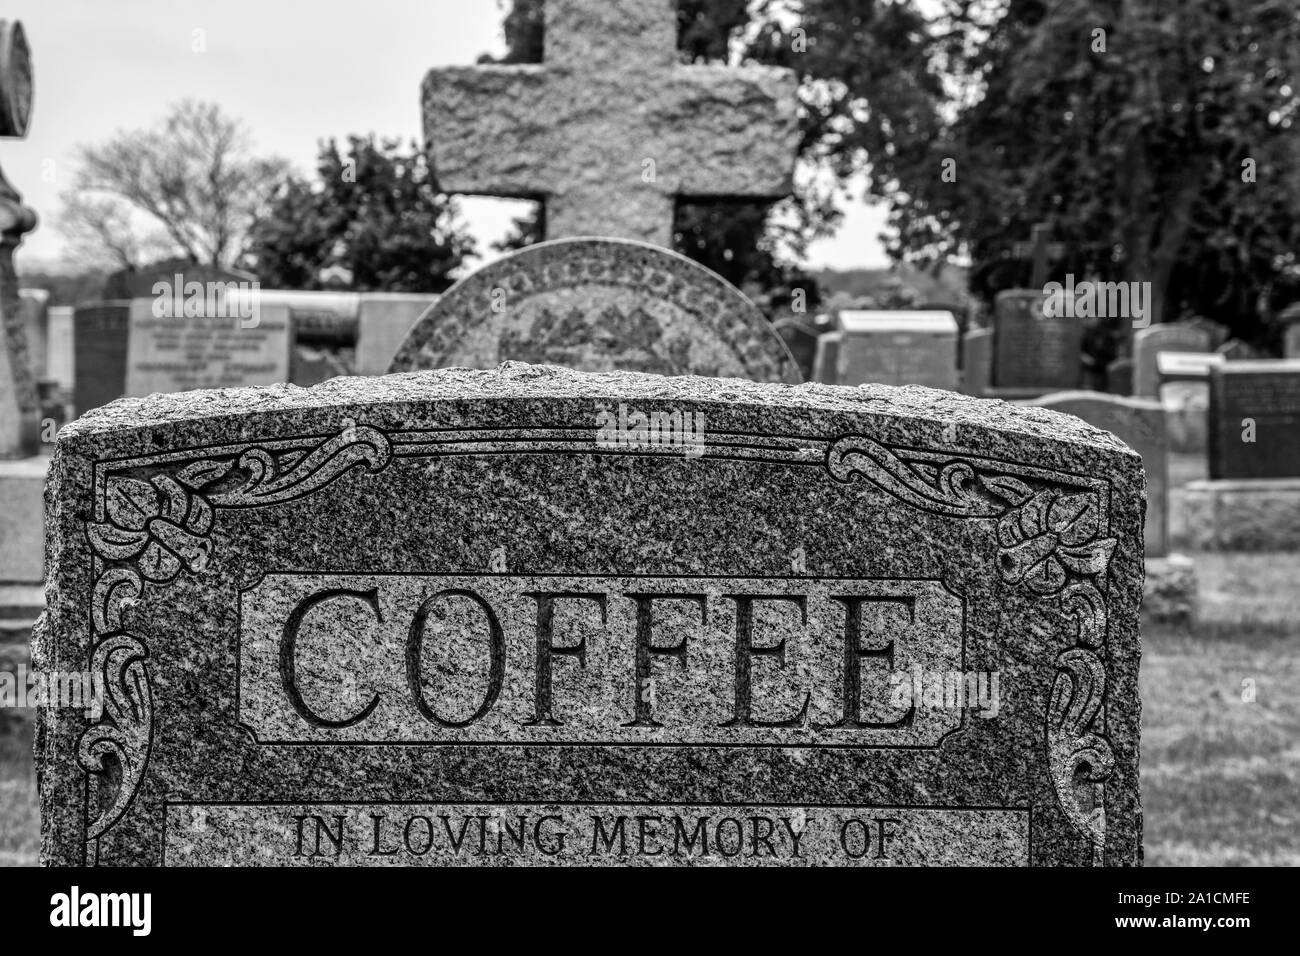 Monochromes Bild von mehrere Grabsteine, der Mittelpunkt Kaffee lesen, was auf dem Konzept der Getränke und Kaffee Kultur. Stockfoto